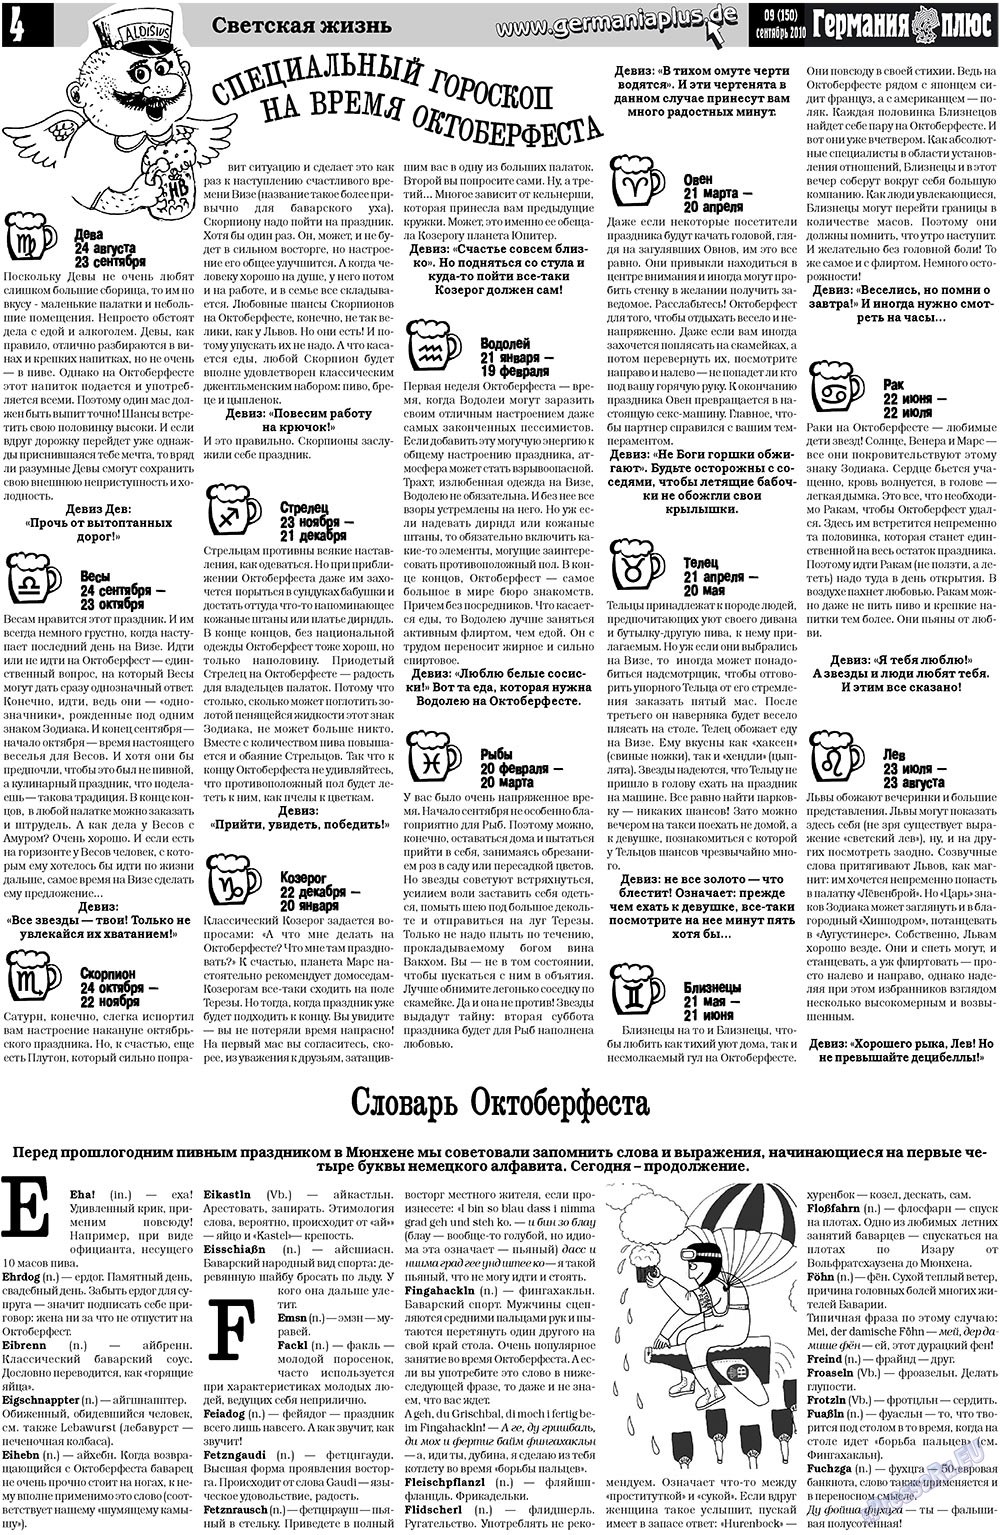 Германия плюс (газета). 2010 год, номер 9, стр. 4